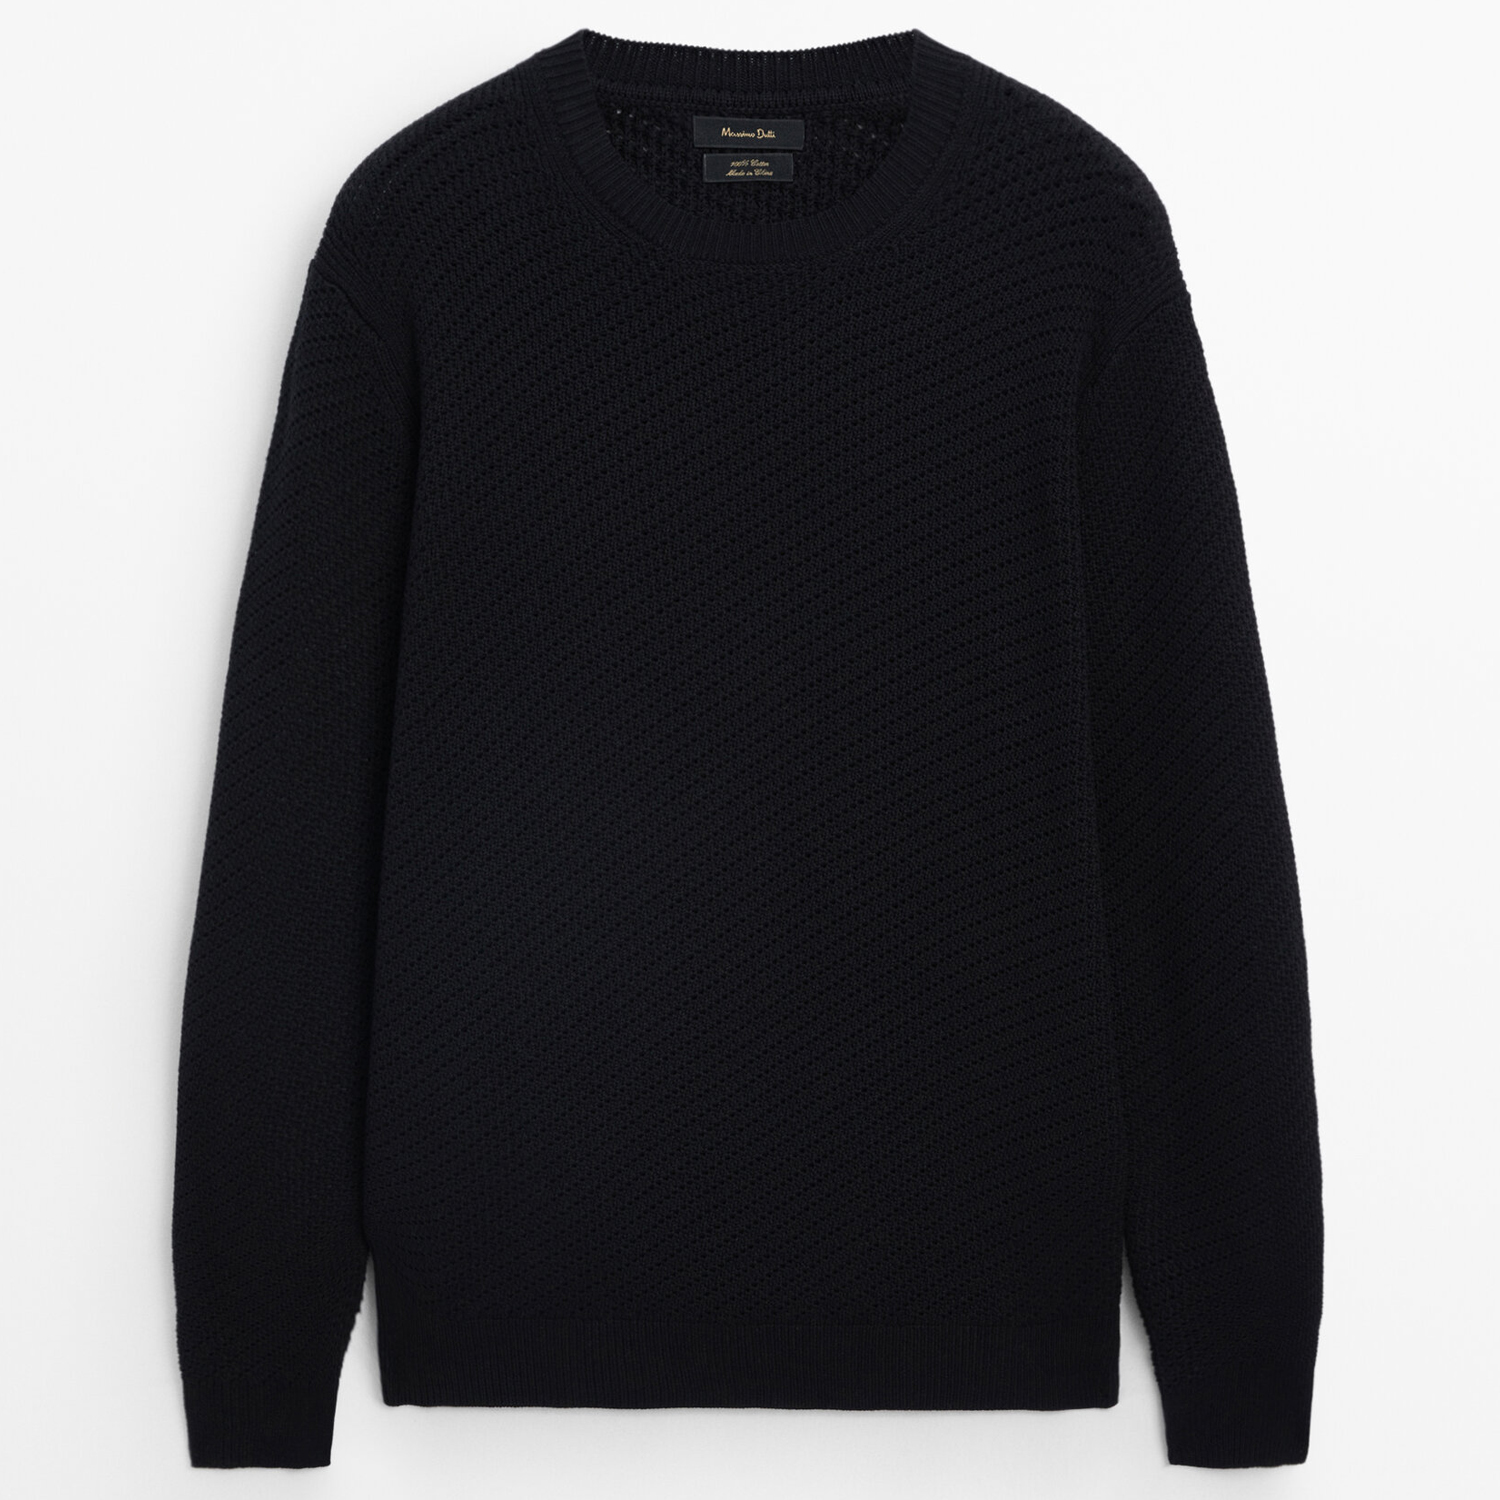 Свитер Massimo Dutti Crew Neck Cotton Mesh Knit, черный женский пуловер с капюшоном свитшоты с принтом тыквы на день благодарения толстовки с круглым вырезом свитер футболка с длинным рукавом